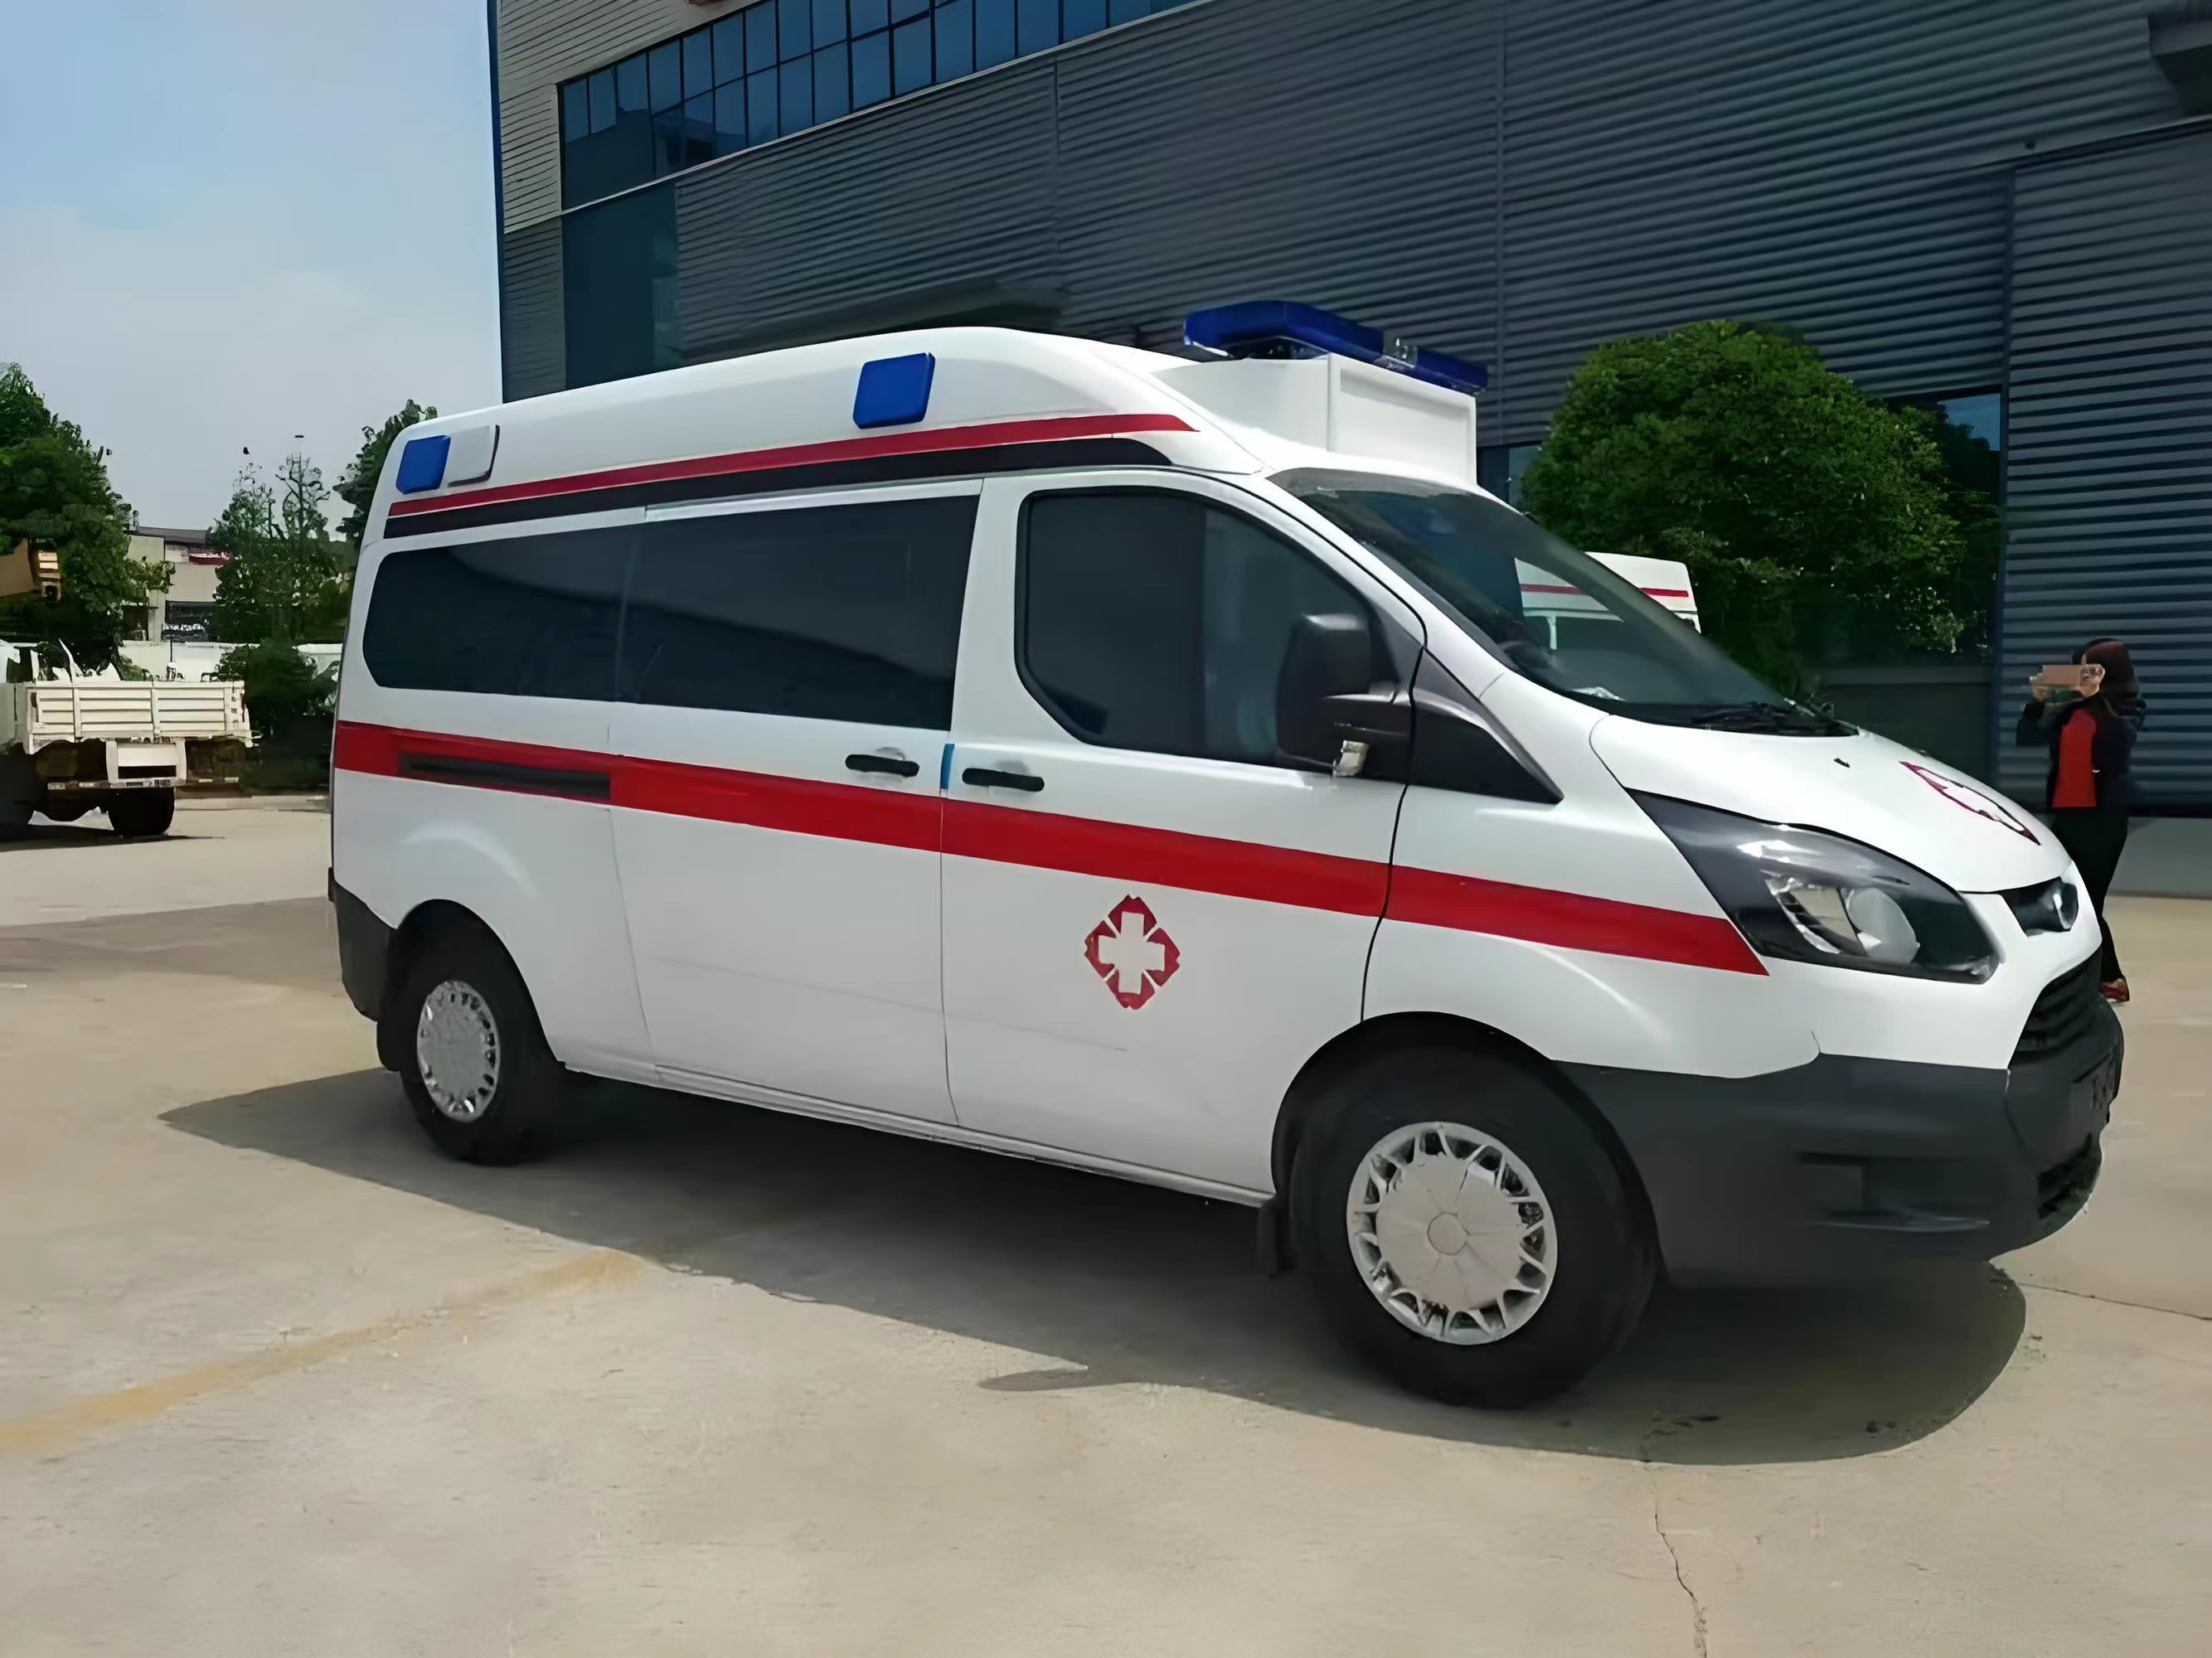 广州跨省病人转运-救护车出租转运--24小时服务